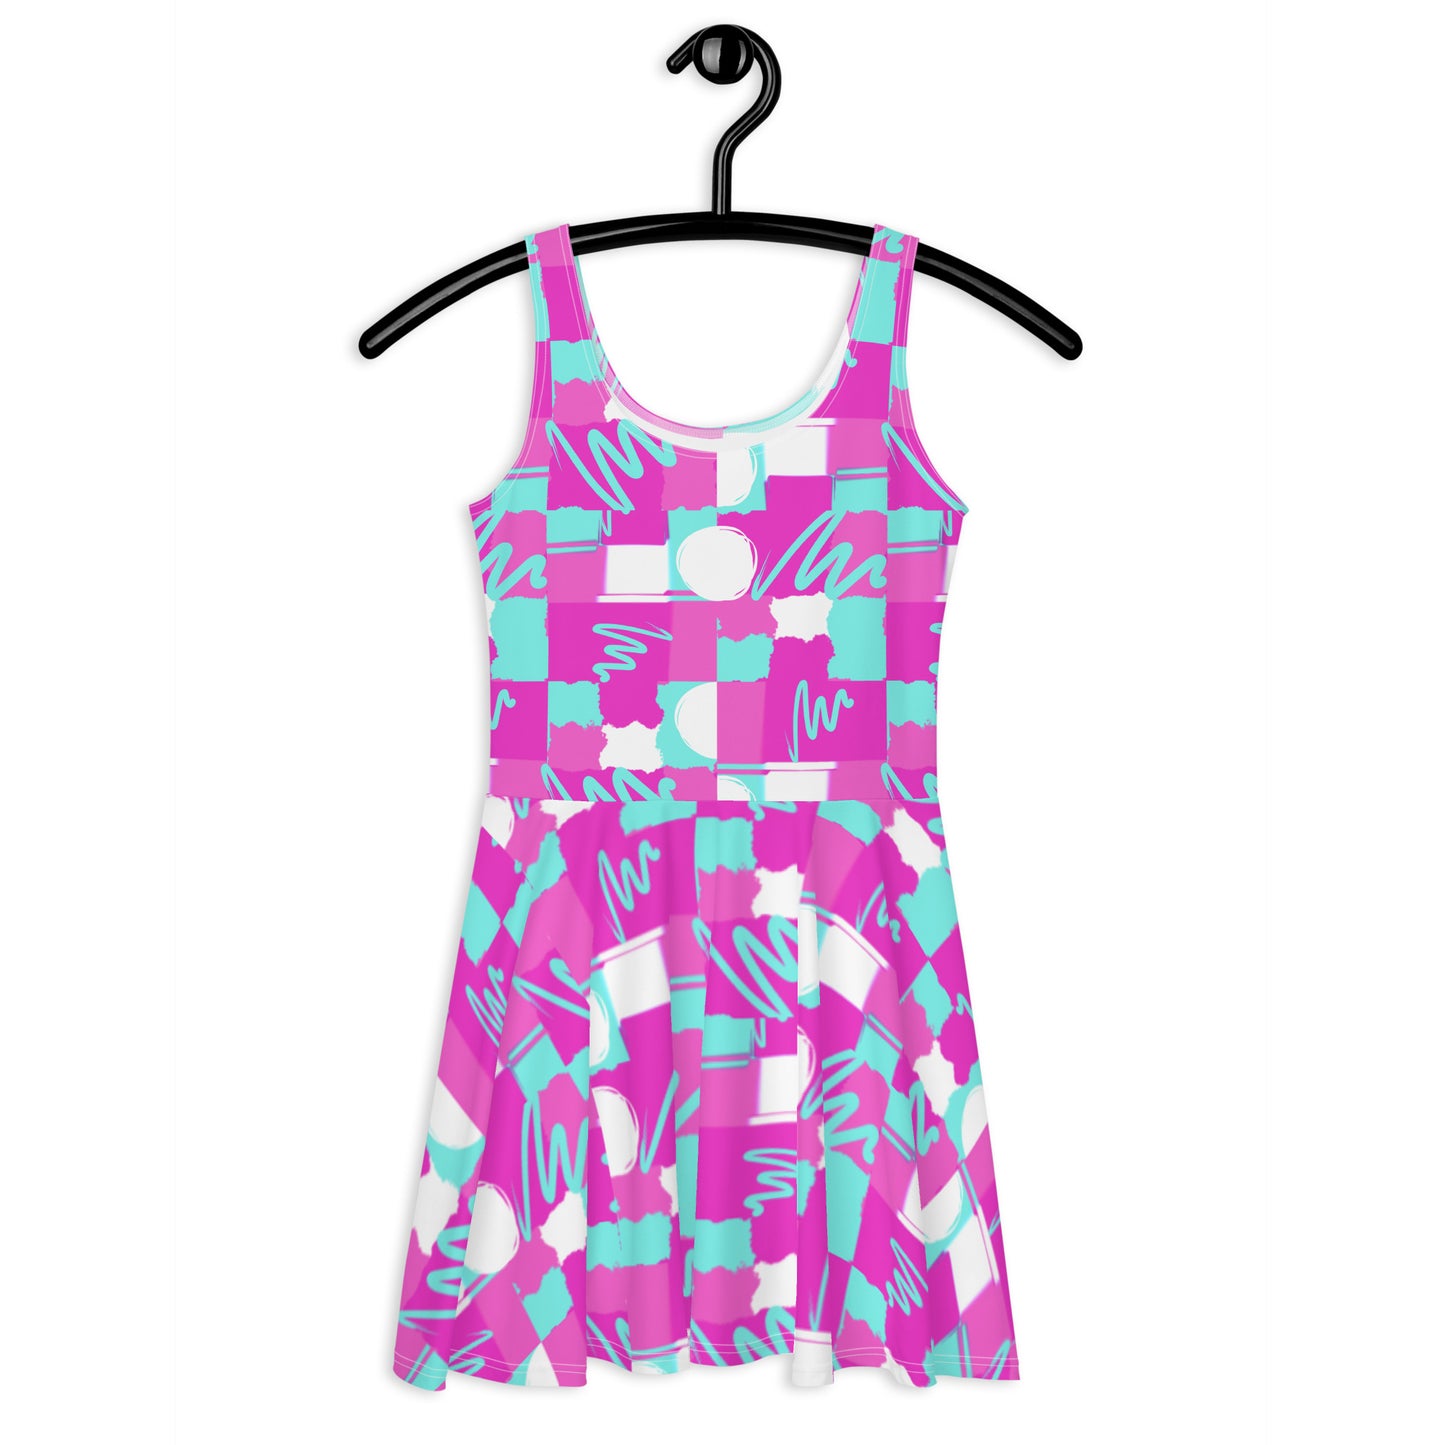 Women's Dress | Fuchsia Abstract Design | Skater Dress | Custom Made | XS-3XL